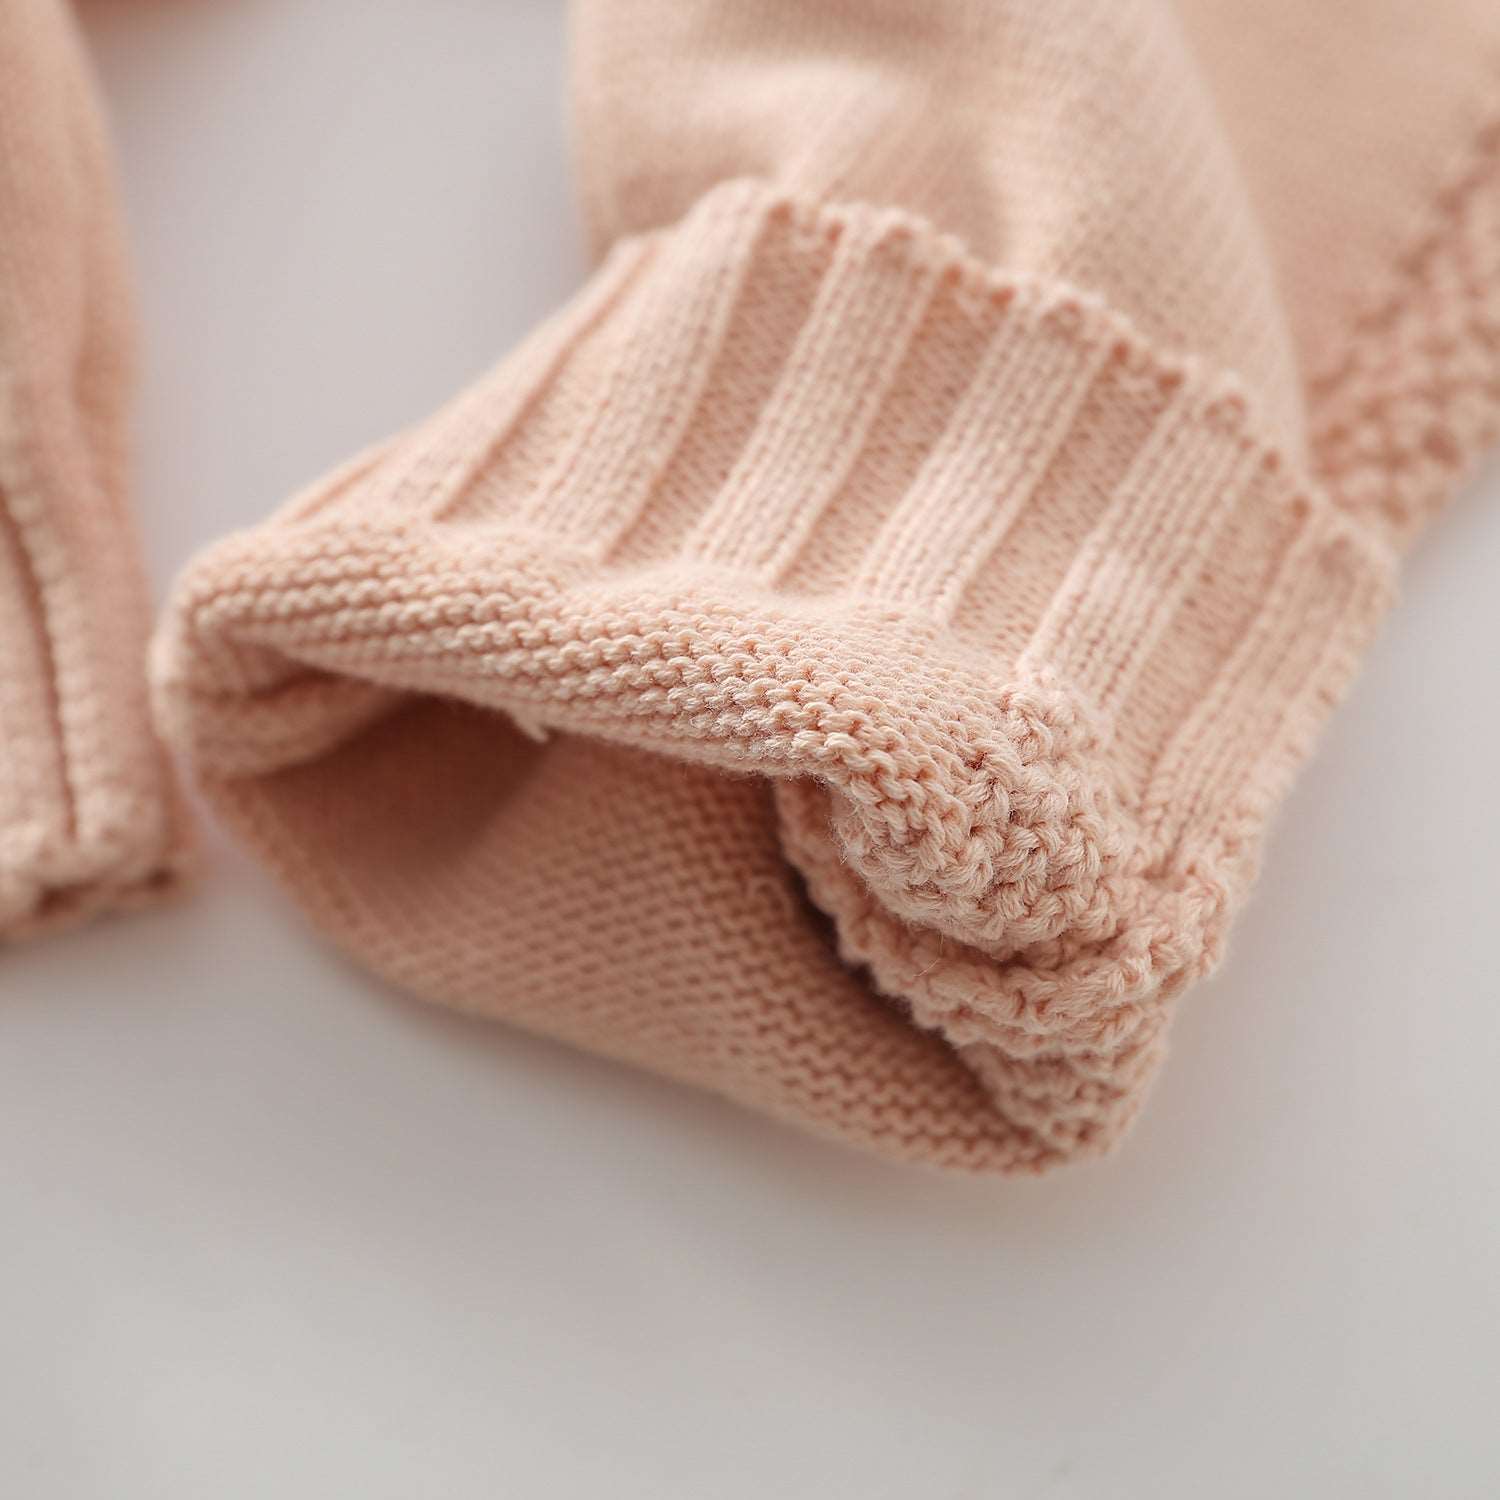 Ruffles n' Frills Knit Jumpsuit || Angels Breath Pink